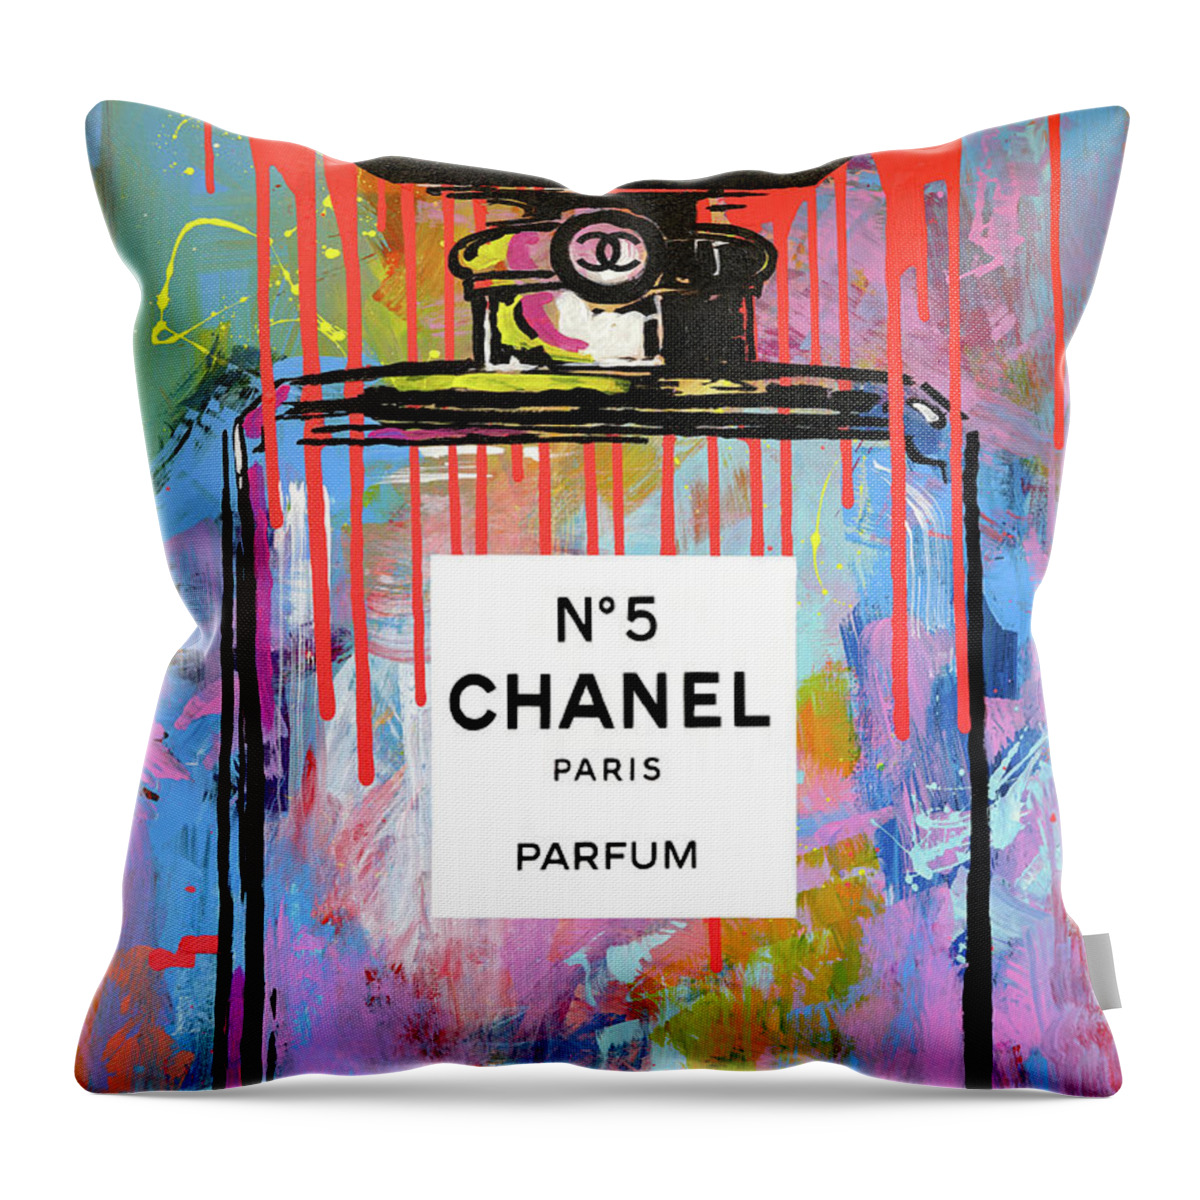 Chanel Urban Pop Art Throw Pillow